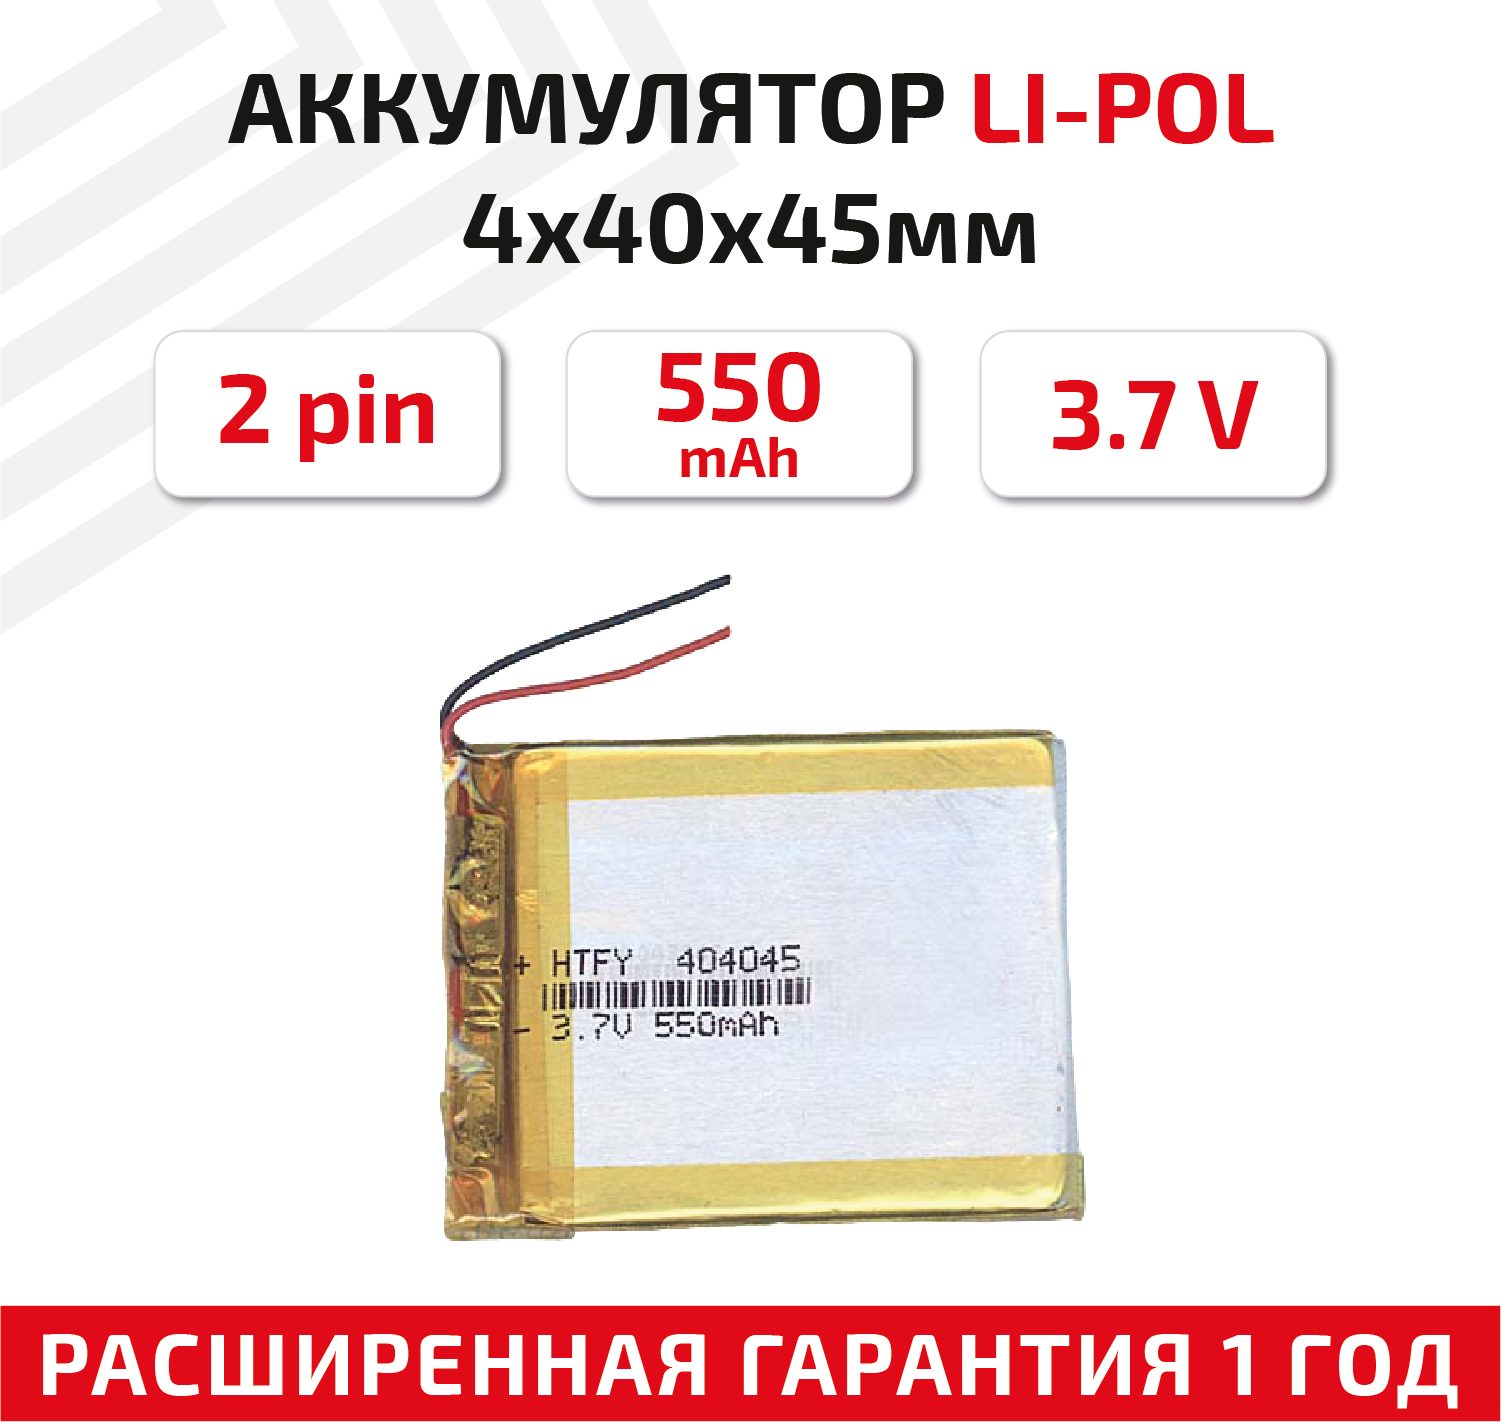 Универсальный аккумулятор (АКБ) для планшета, видеорегистратора и др, 4х40х45мм, 550мАч, 3.7В, Li-Pol, 2pin (на 2 провода)